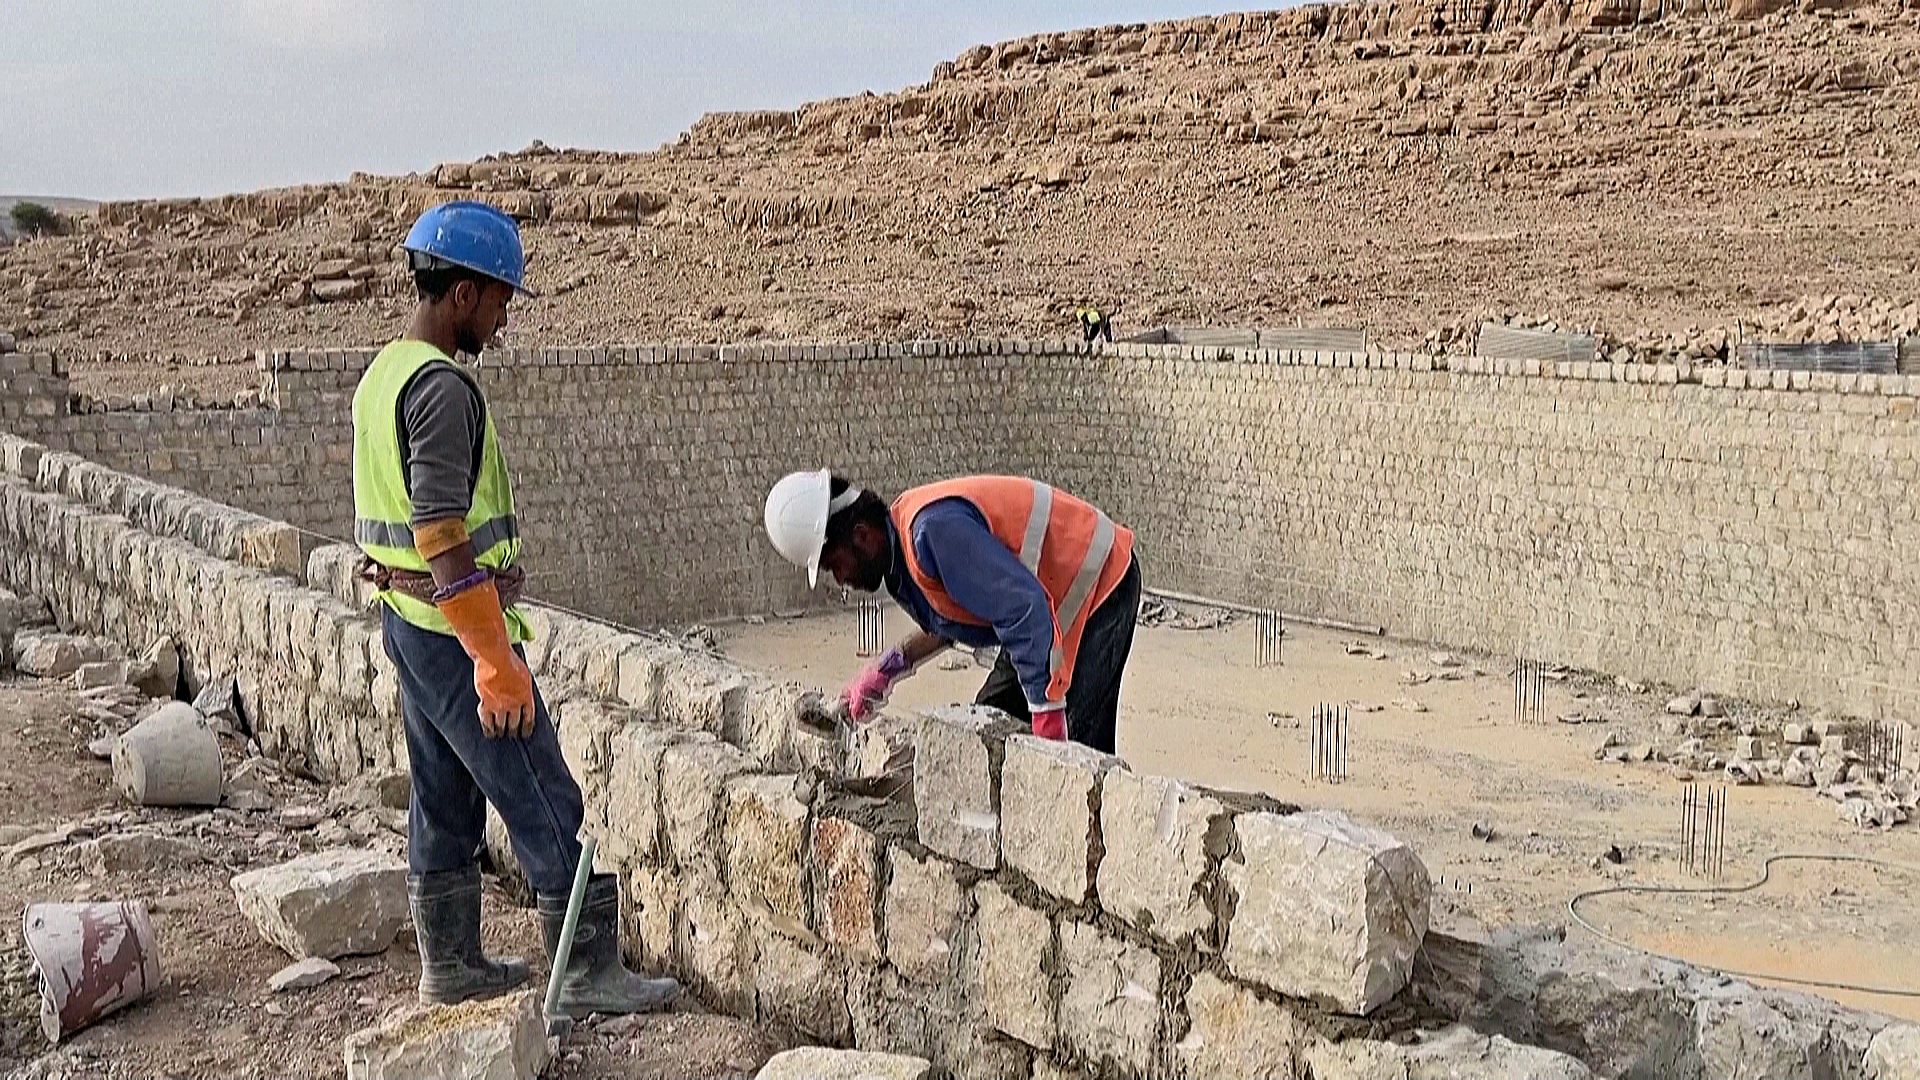 Йеменцы строят резервуары для сбора дождевой воды из-за засухи